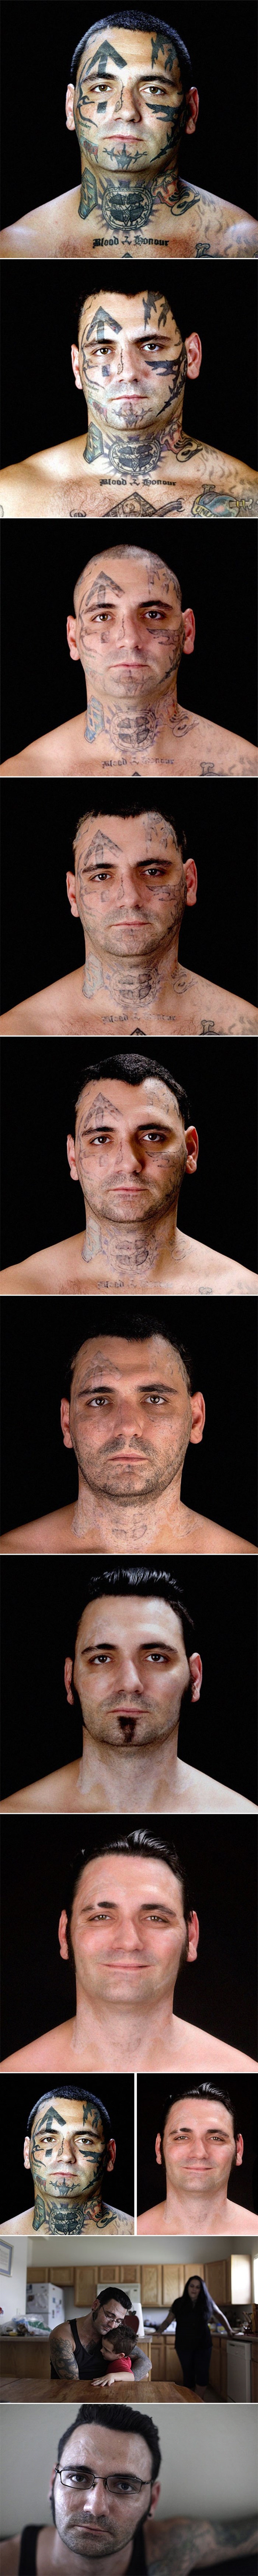 Bivši skinhead odlučio je napustiti rasističku organizaciju i ukloniti tetovaže. Pogledajte kako danas izgleda